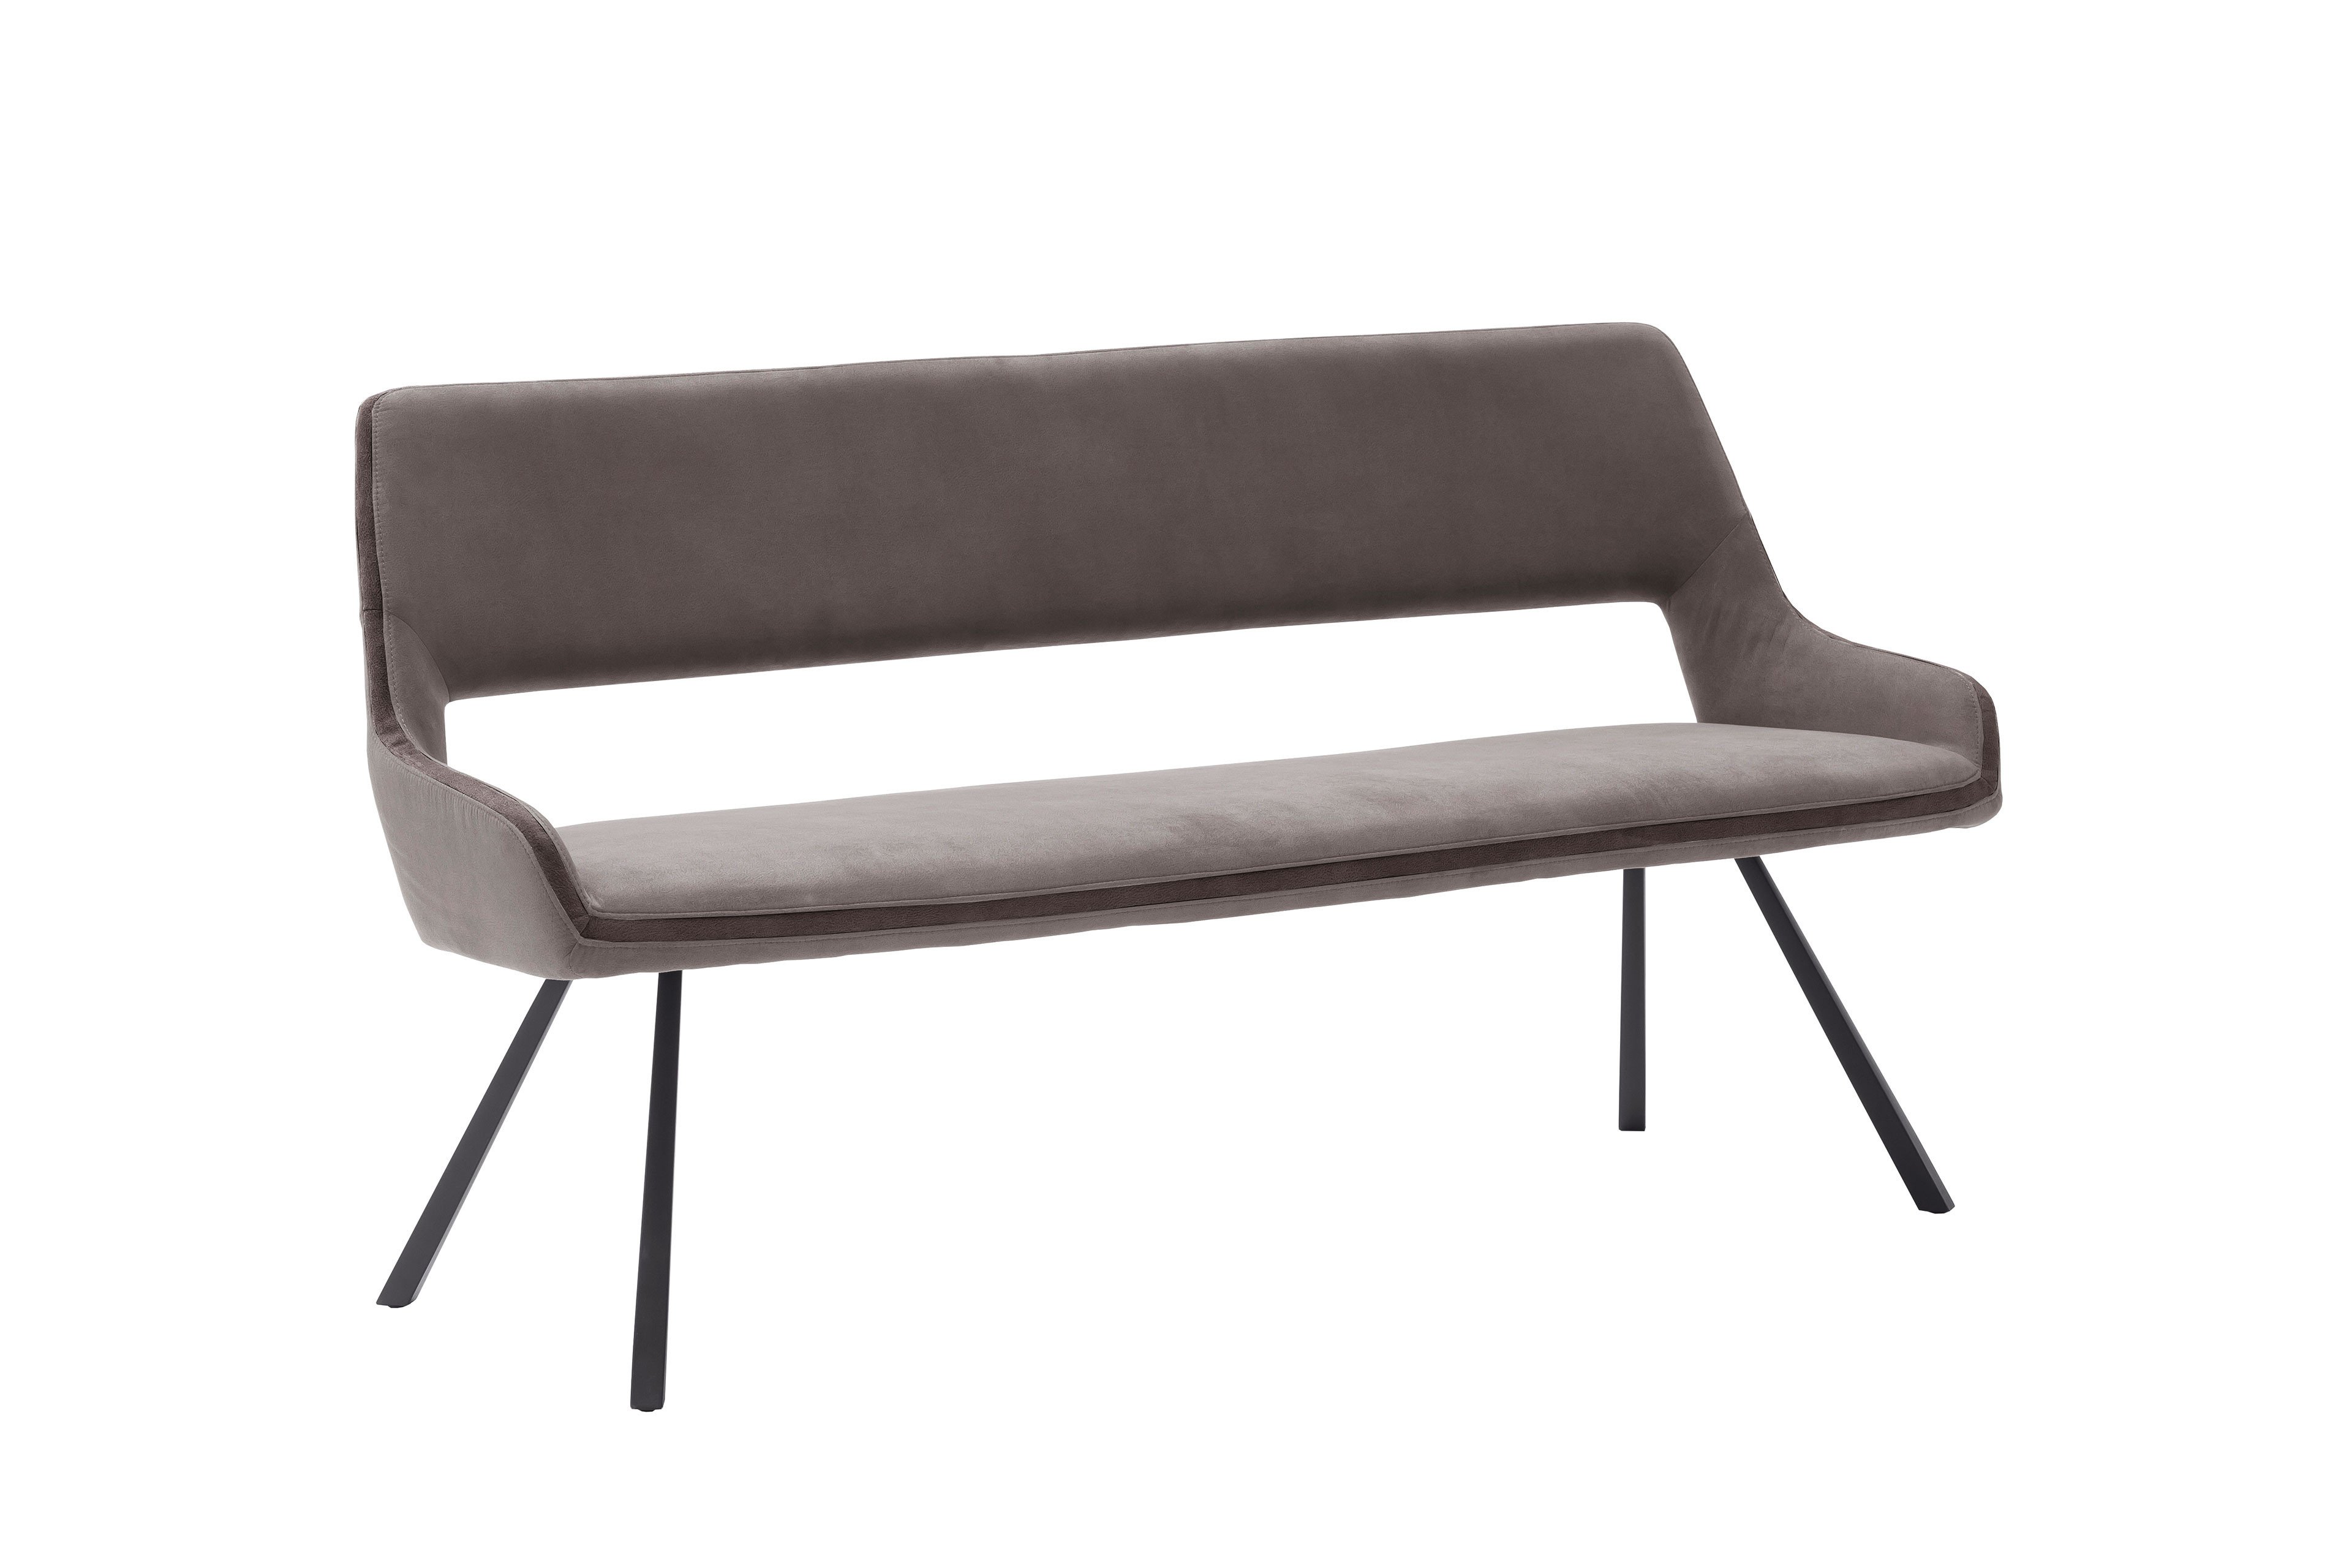 MCA furniture Bank Bayonne mit Vierfußgestell | Möbel Letz - Ihr Online-Shop